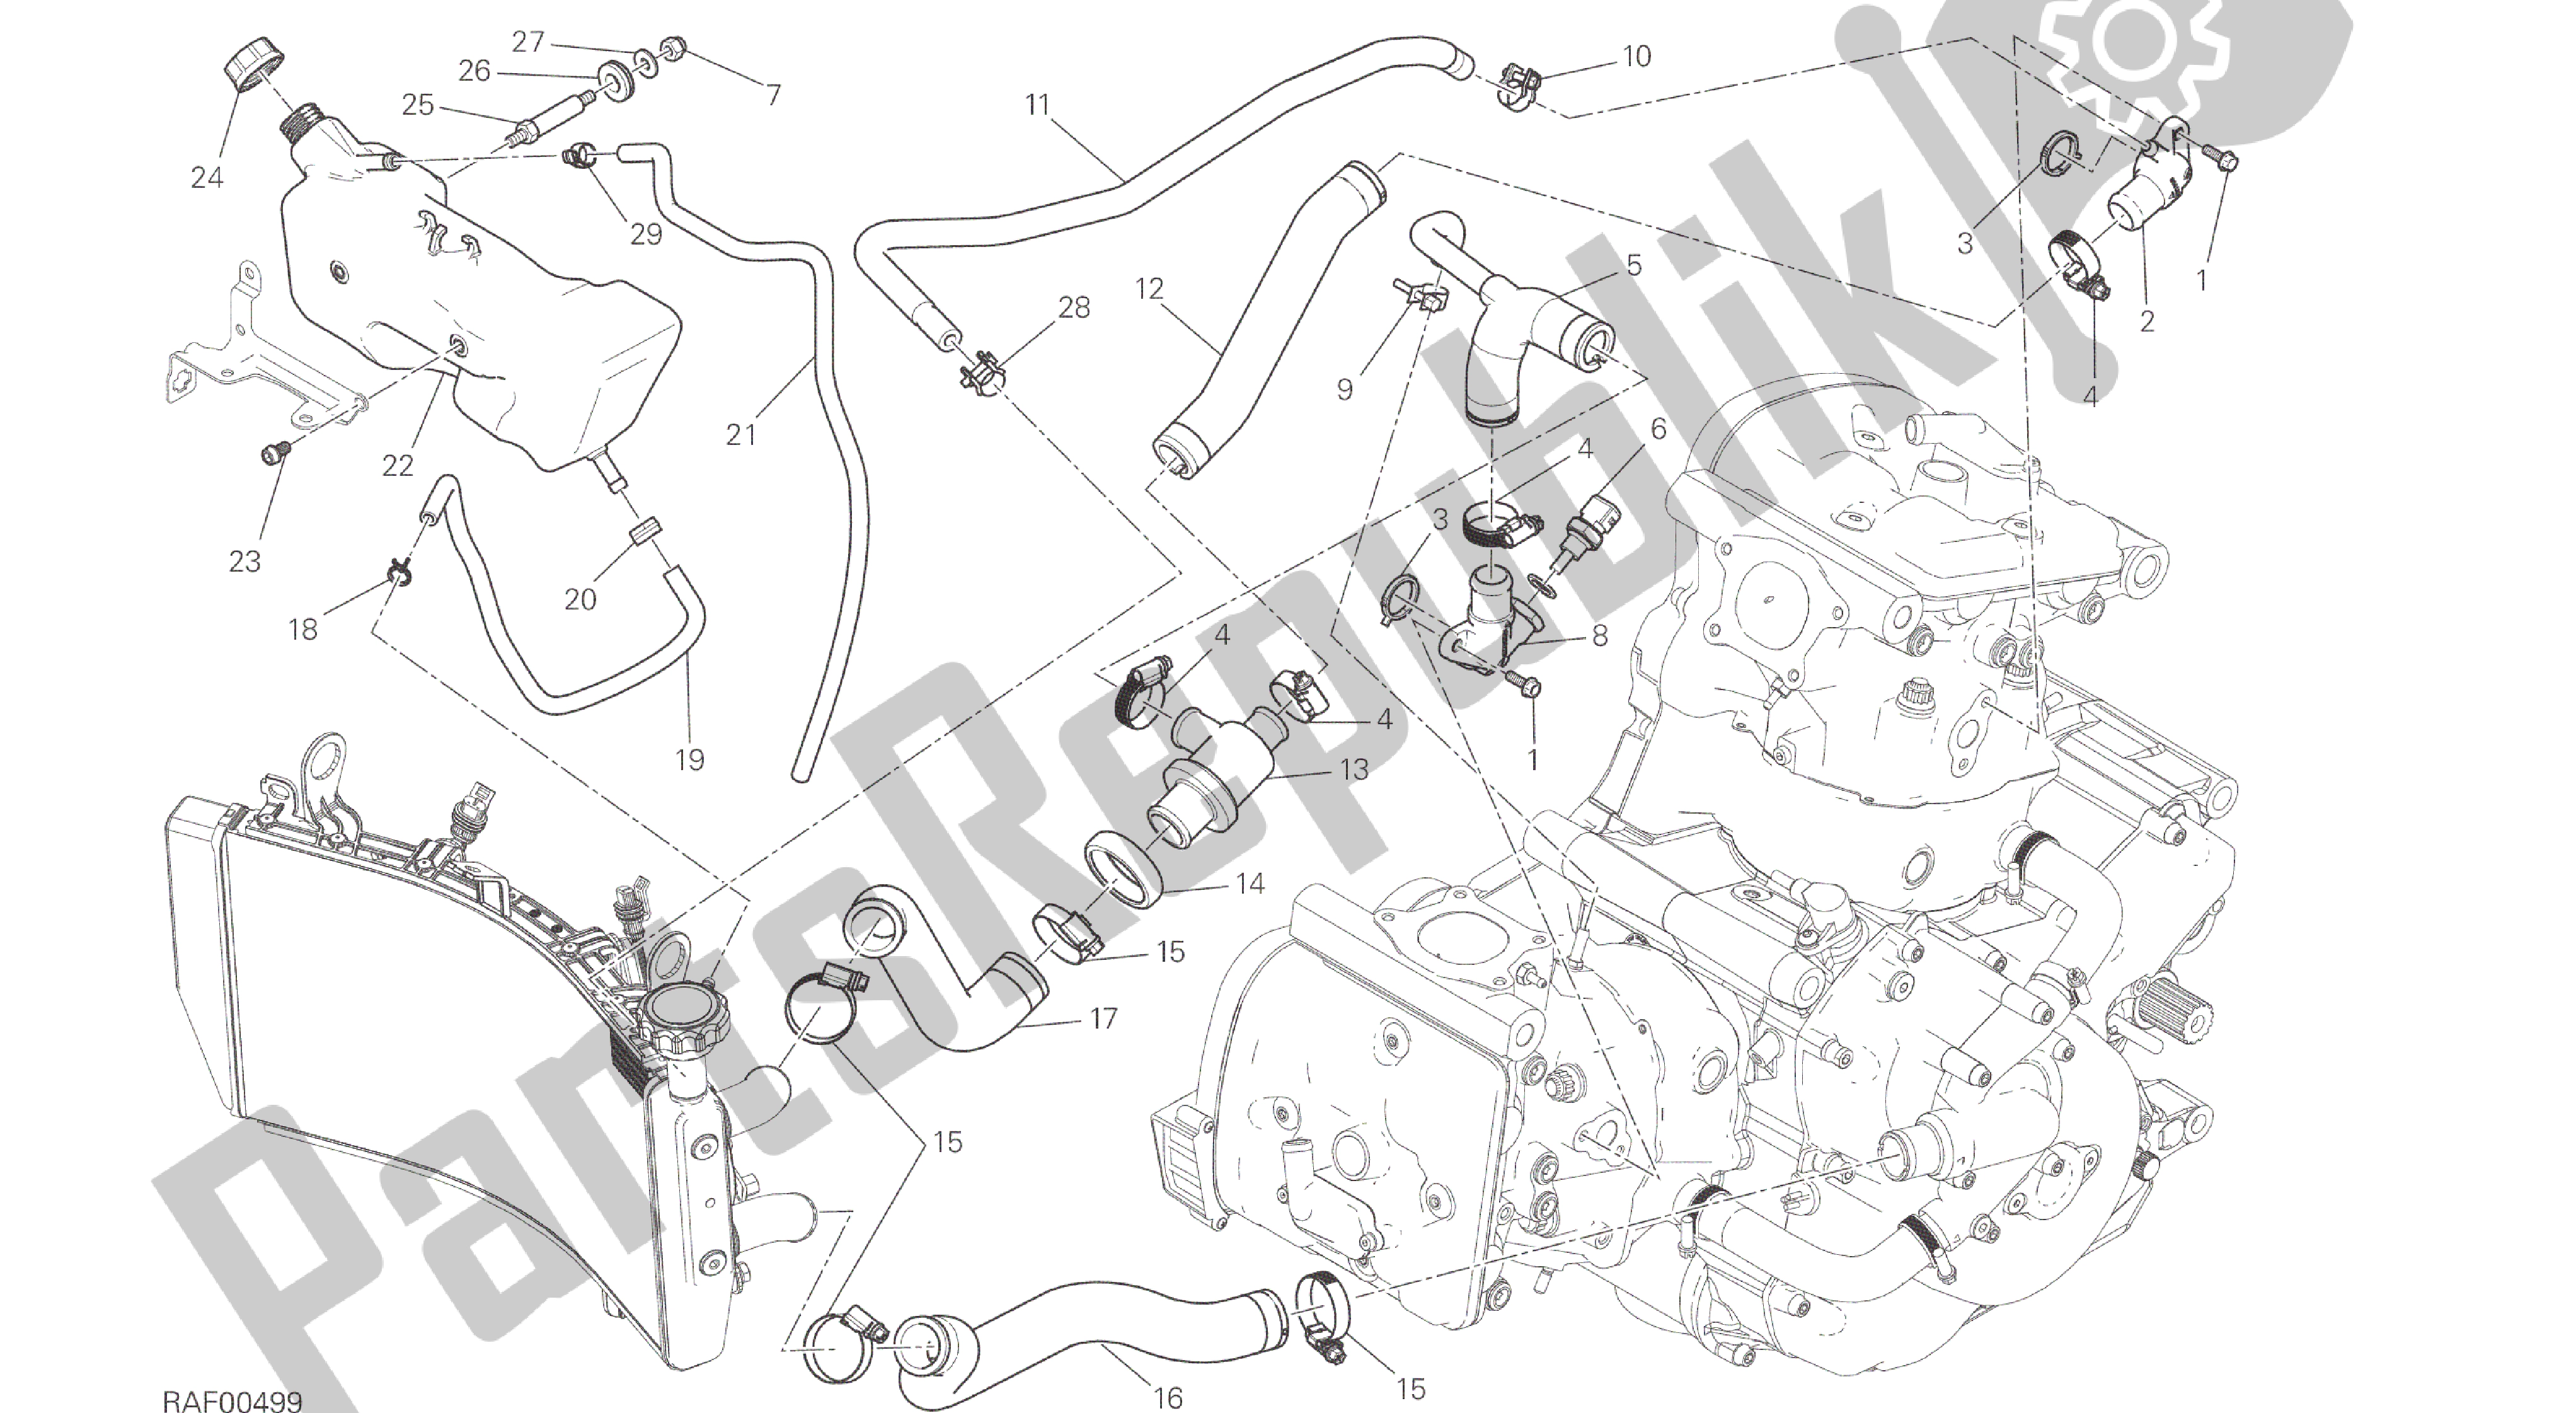 Alle onderdelen voor de Tekening 031 - Koelsysteem [mod: M 821] Groepsframe van de Ducati Monster 821 2014